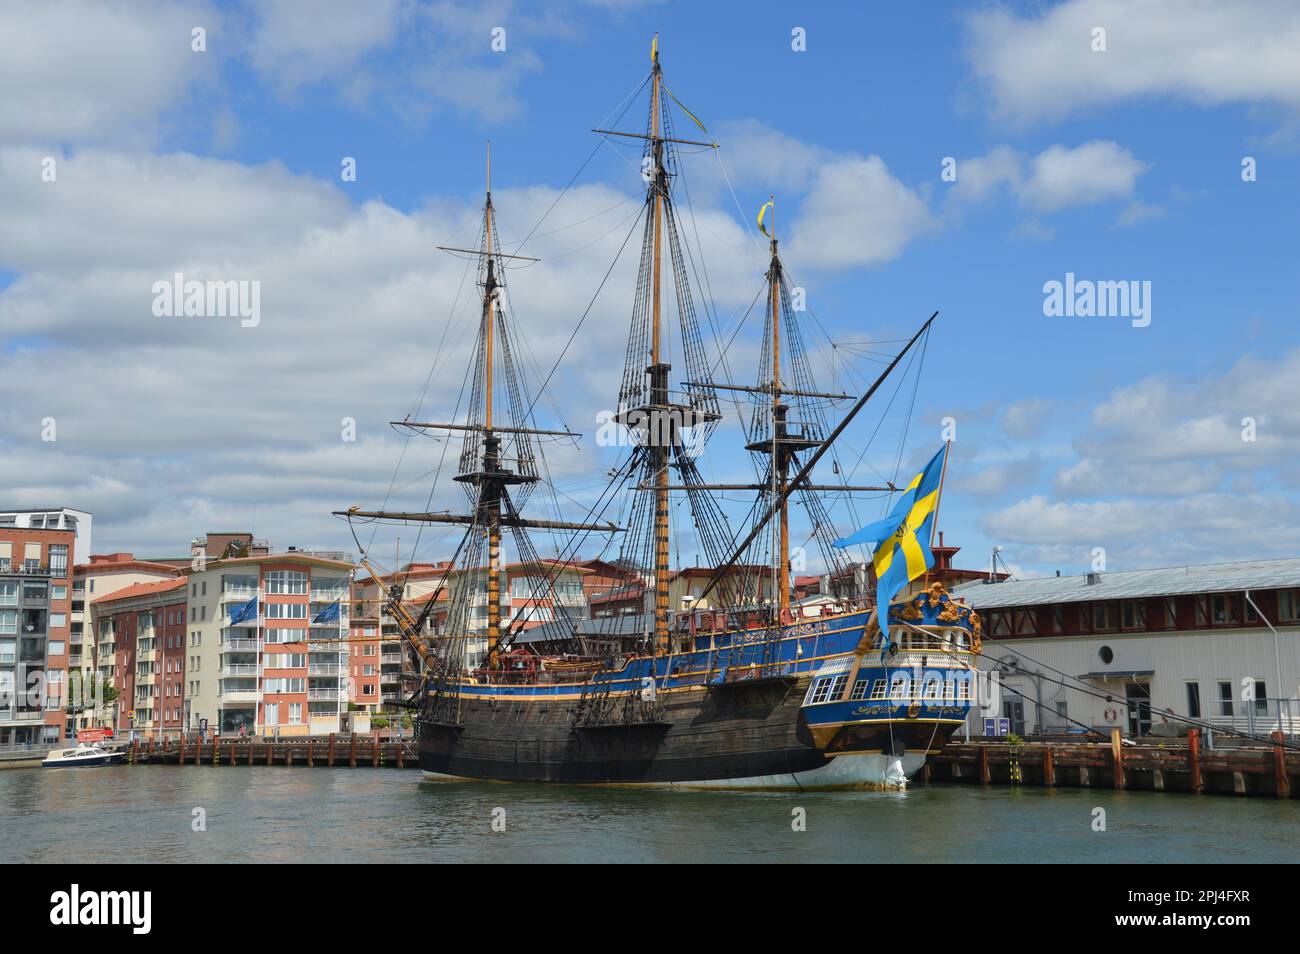 Schweden, Göteborg: Das ostindianische Segelschiff "Göteburg", eine Nachbildung des Schiffes, das 1745 vor der Küste von Göteborg sank. Es dauert zehn Jahre, bis er wieder da ist Stockfoto